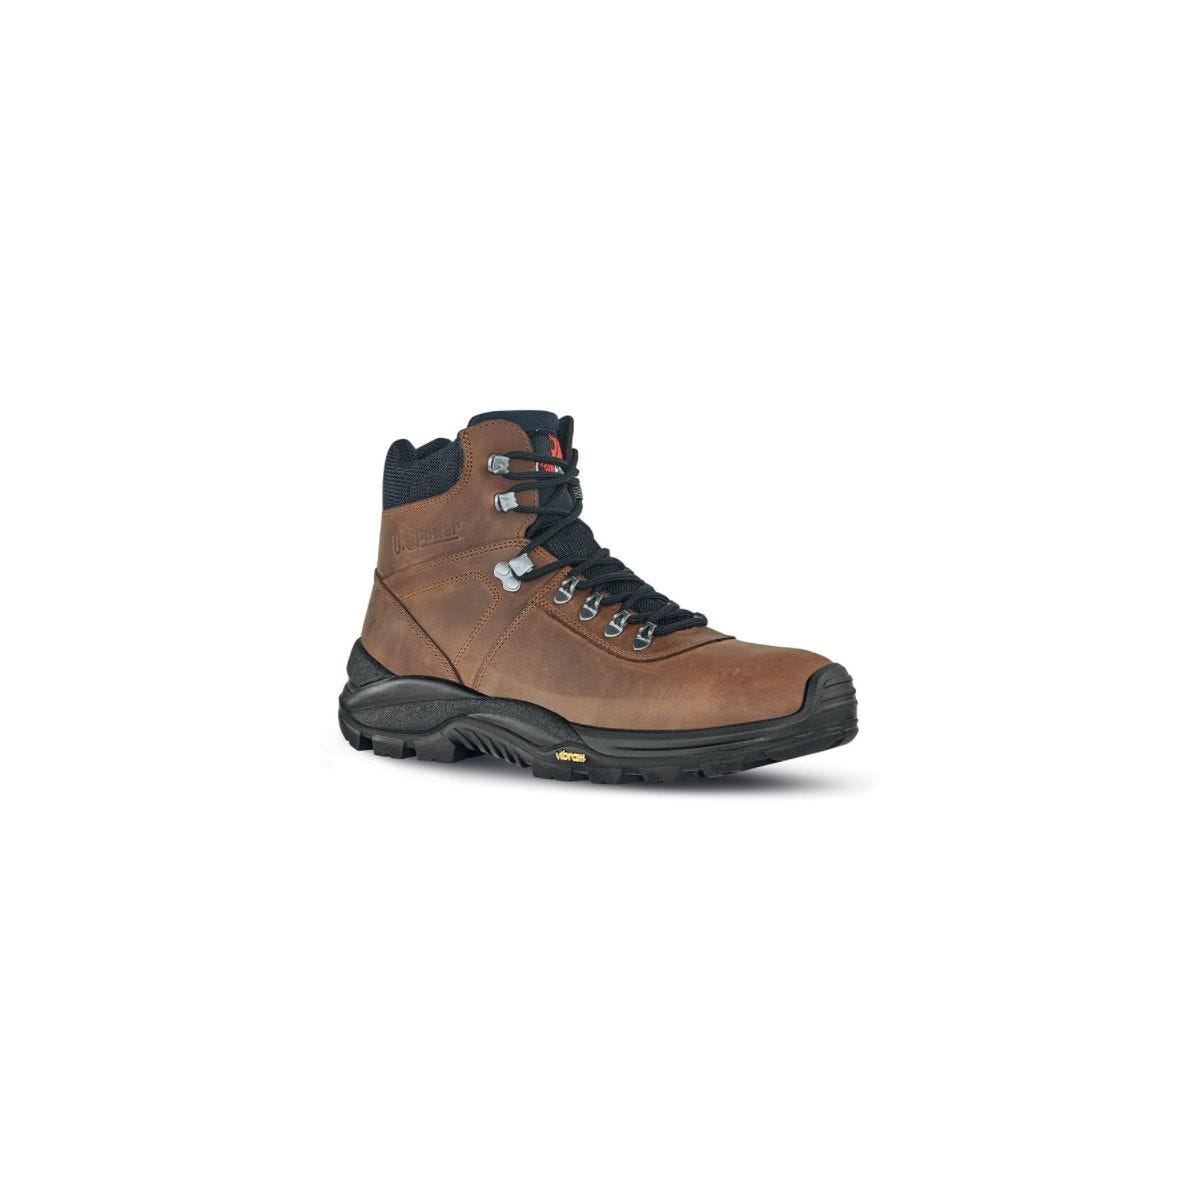 Chaussures de sécurité Trail S3 Marron - U-Power - Taille 39 0